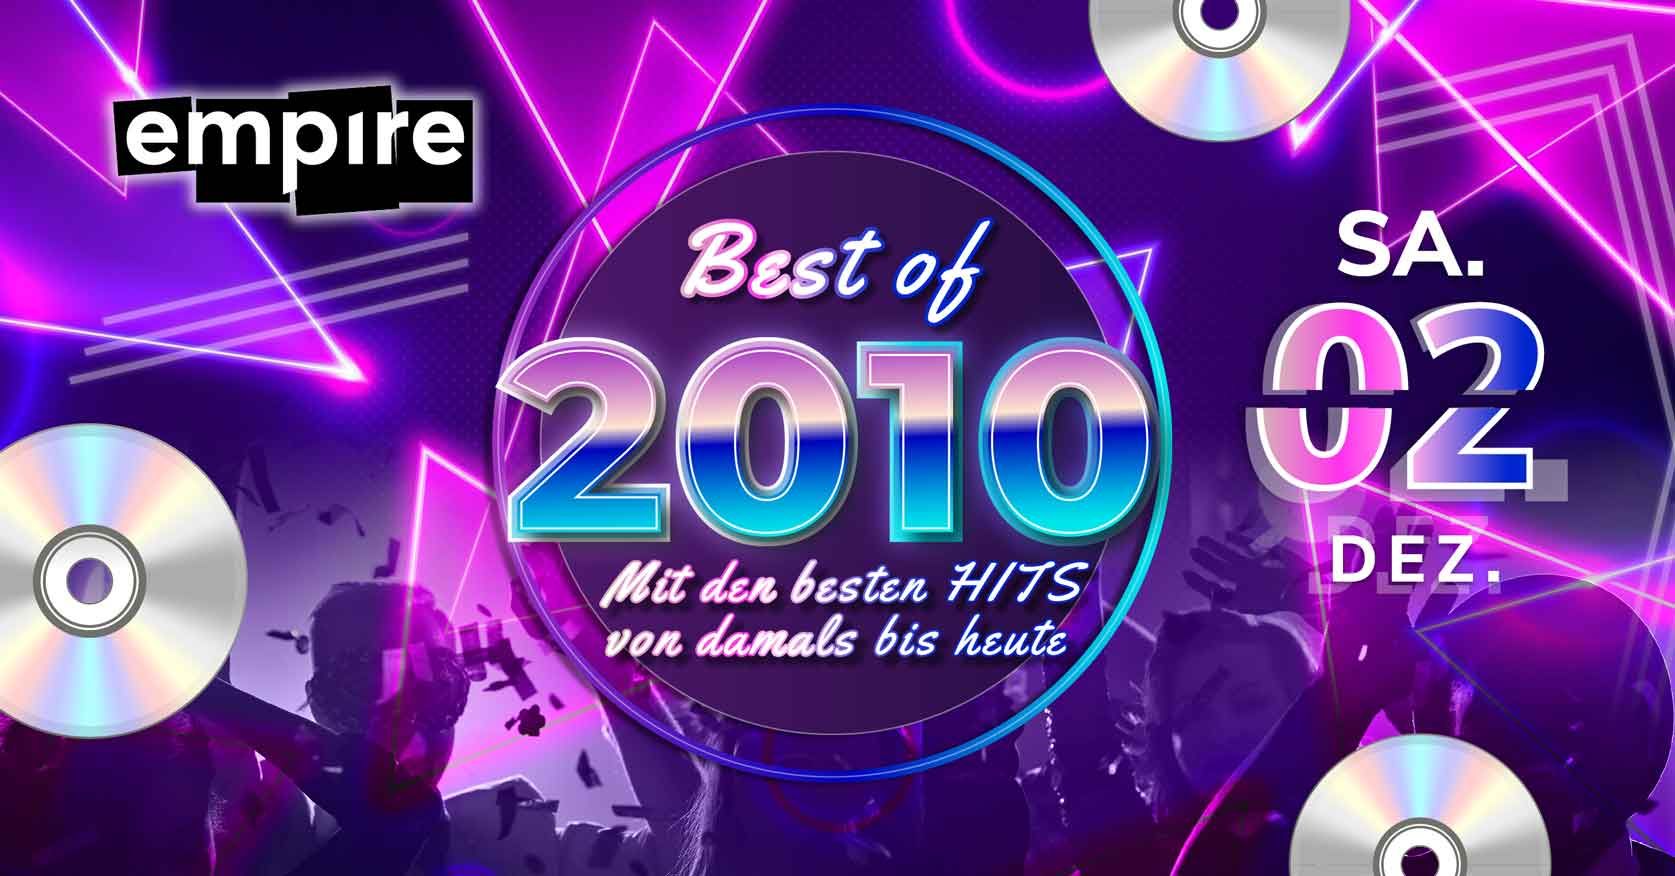 Best of 2010 - Mit den besten Hits von damals bis heute | SA 02.12.